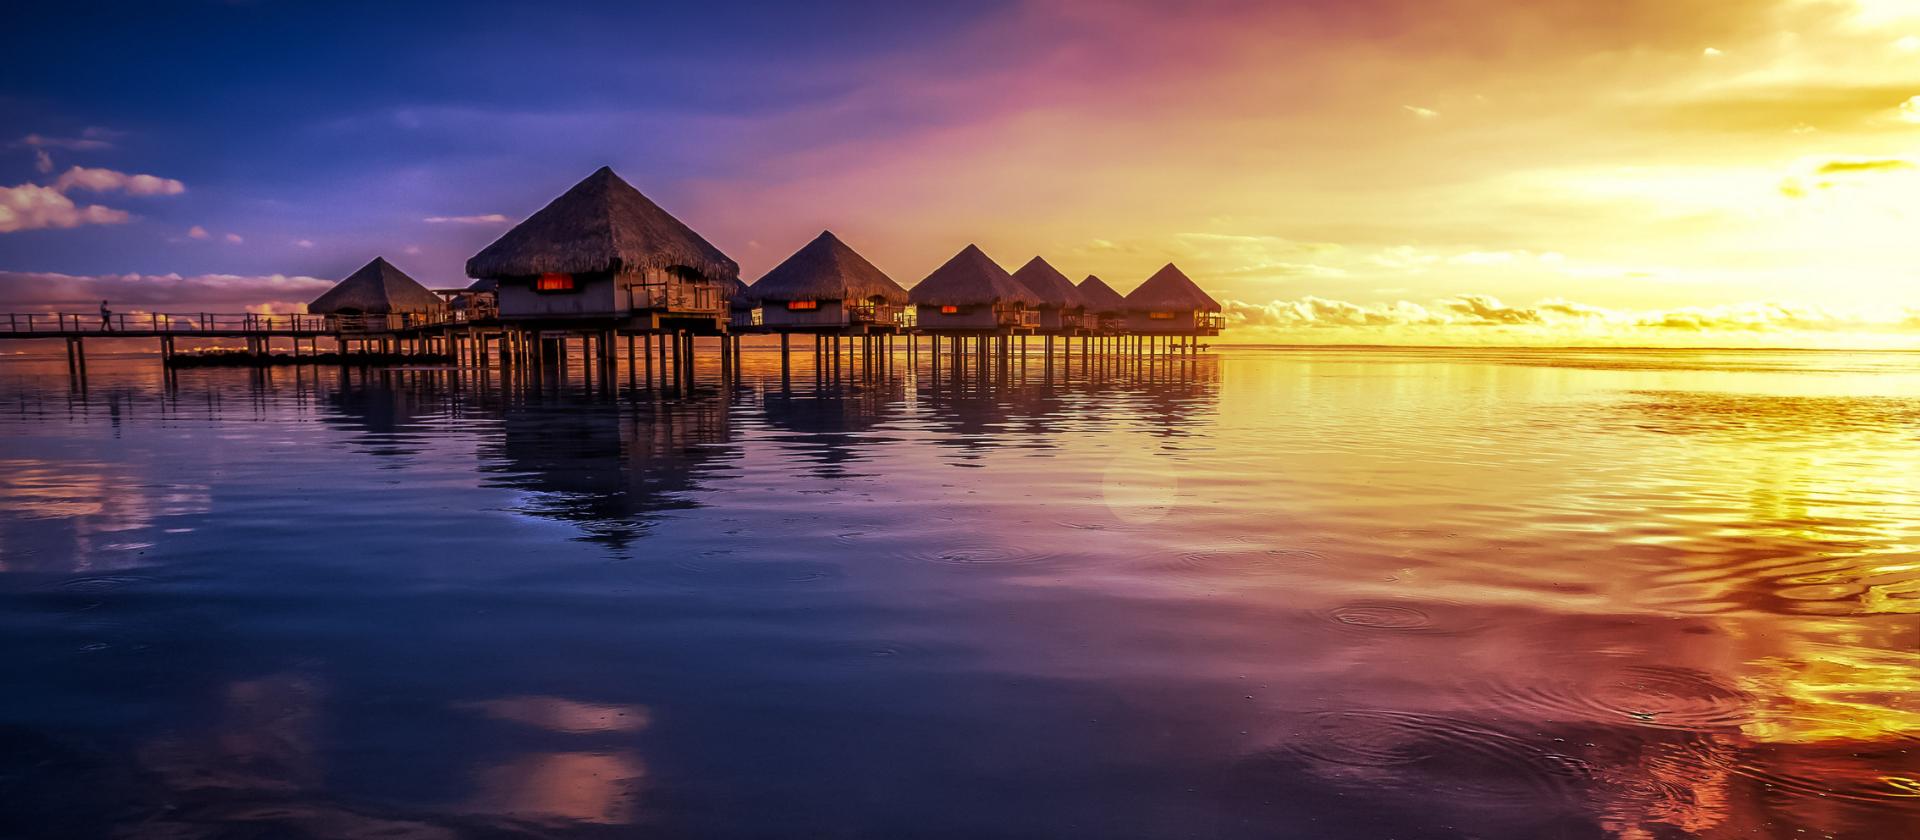 Polinezja Francuska słynie z hoteli z domkami na wodzie